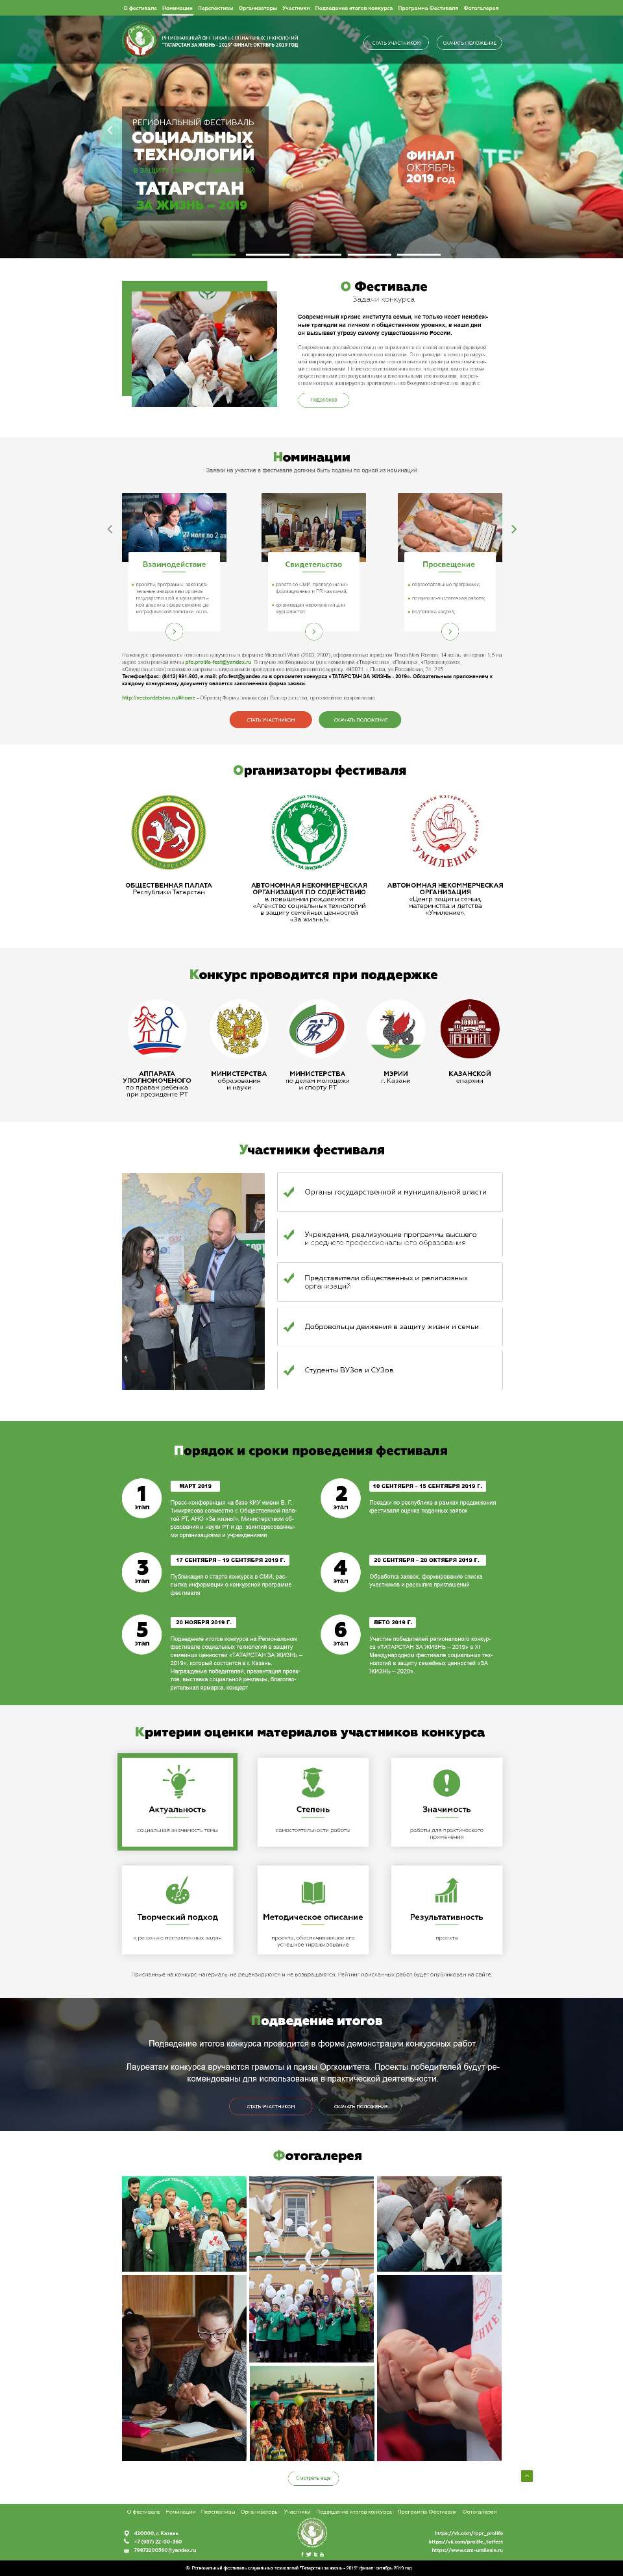 Разработка сайта Татарстан за жизнь - 2019